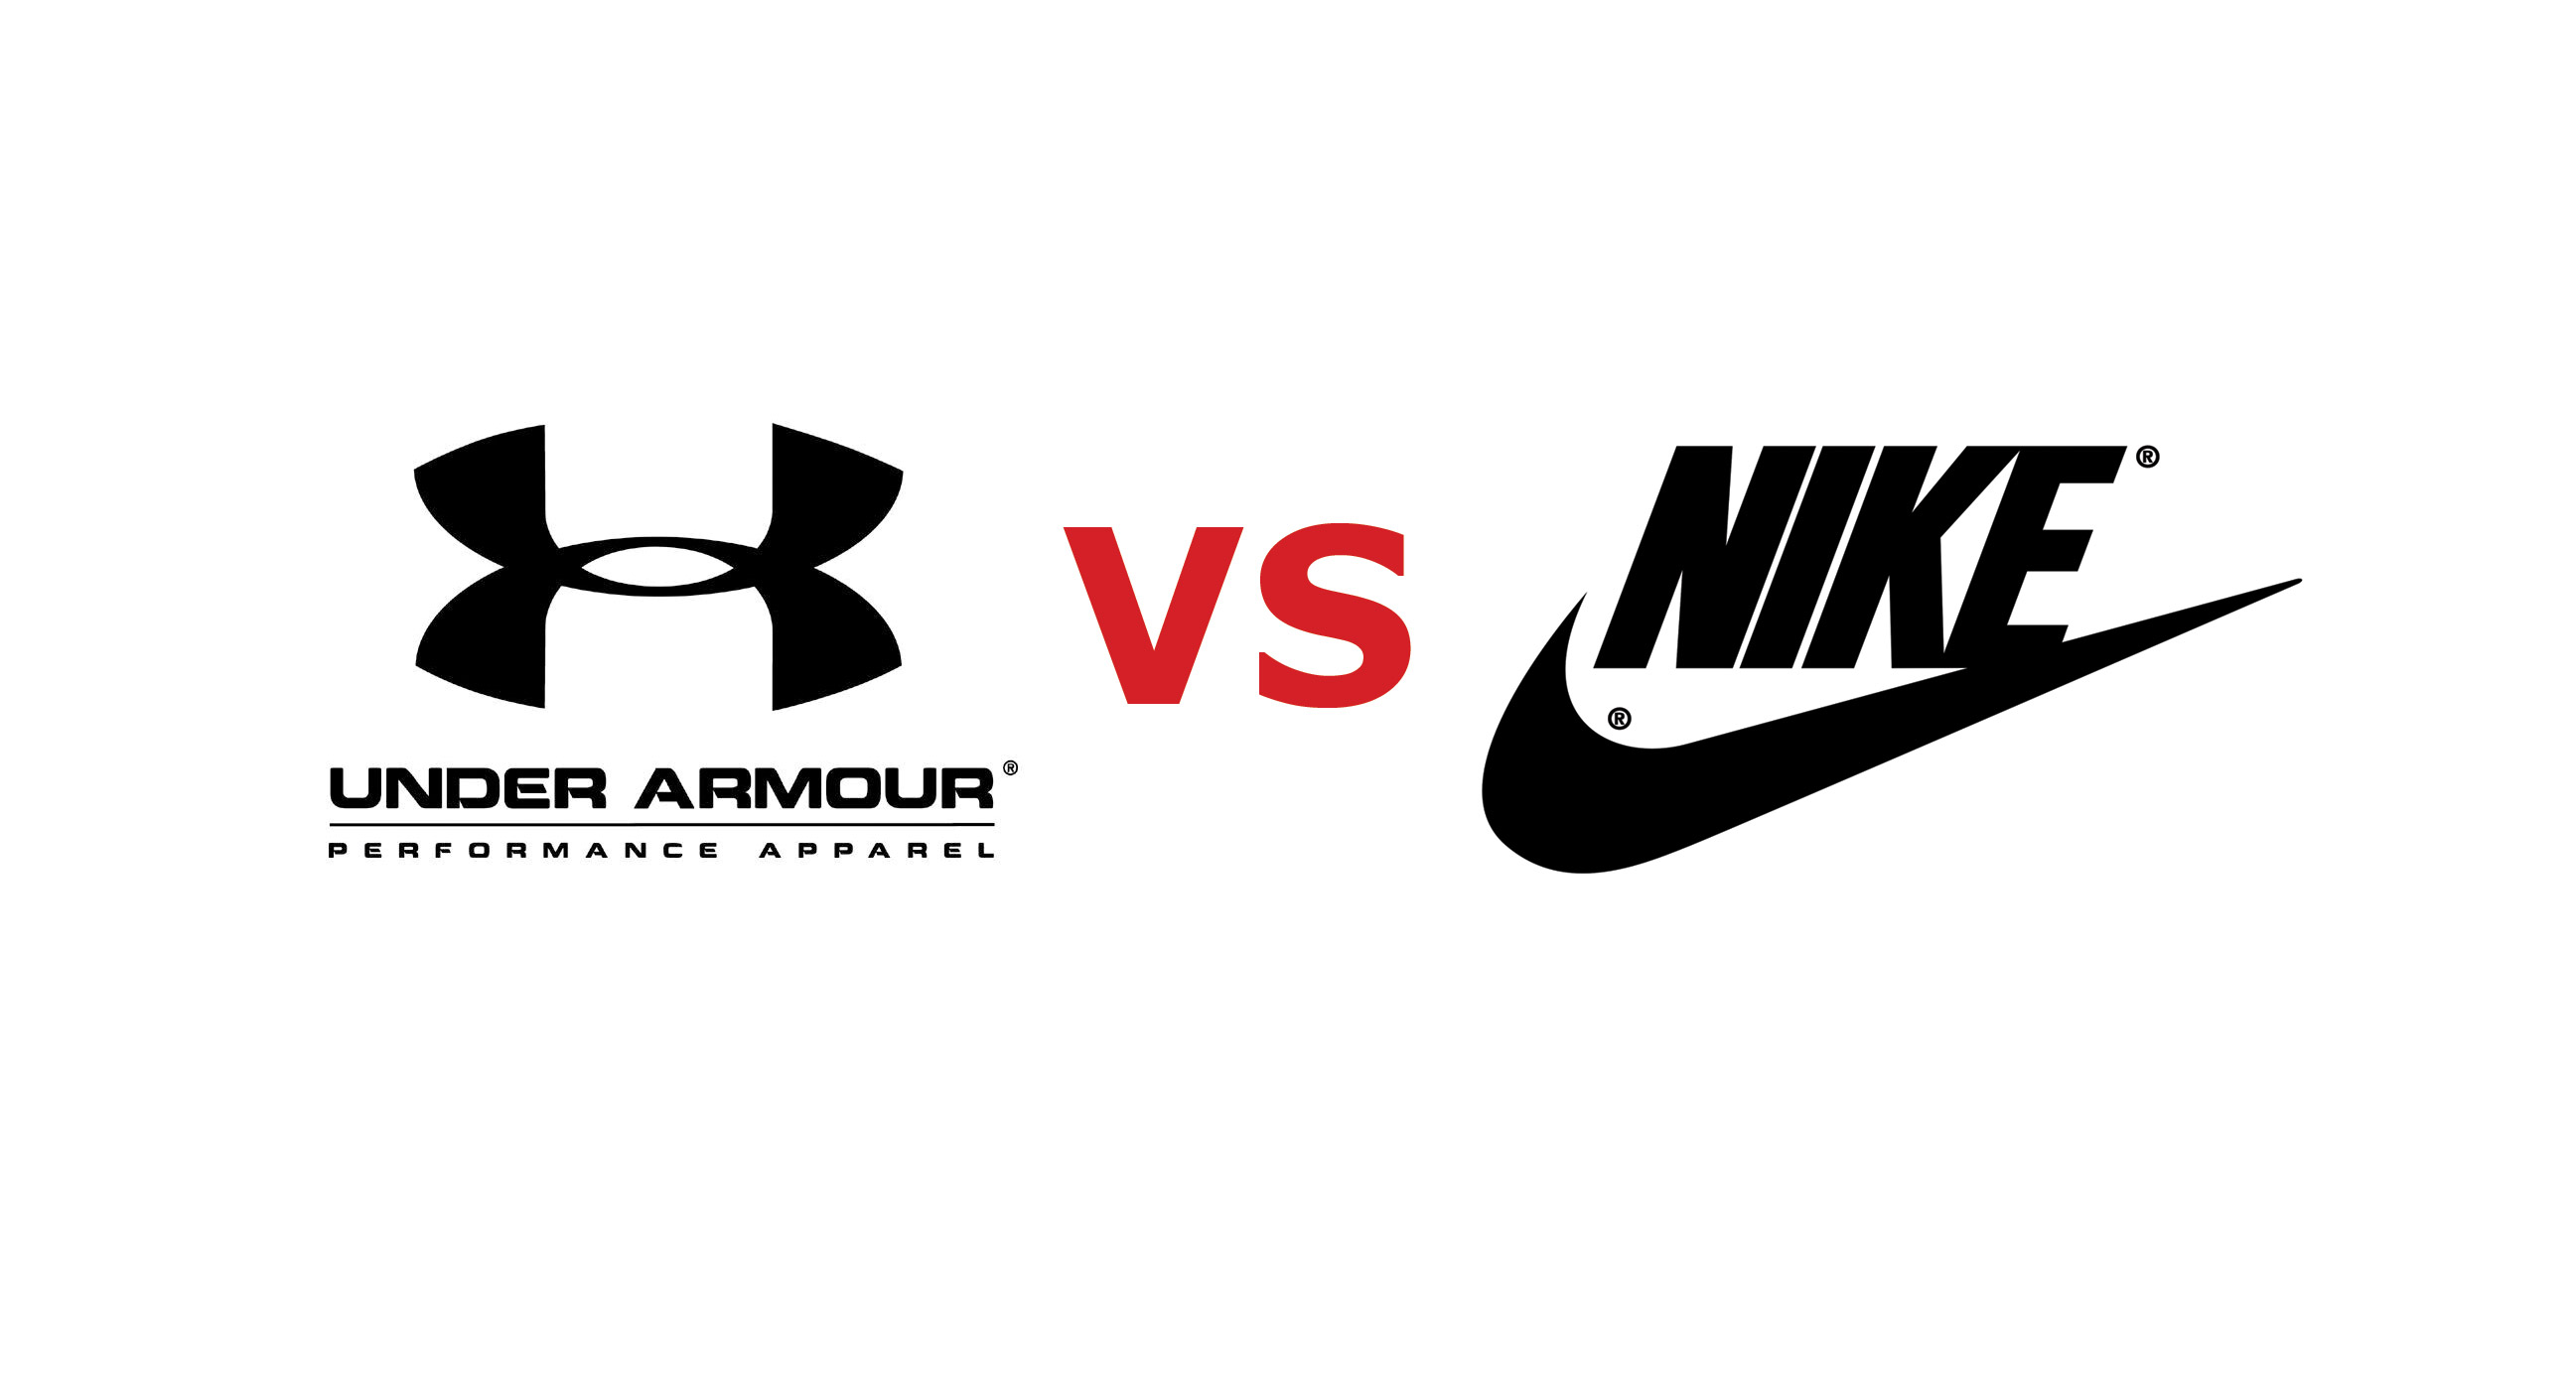 Under Armour HeatGear vs Nike Dri-FIT – The Sports Apparel War